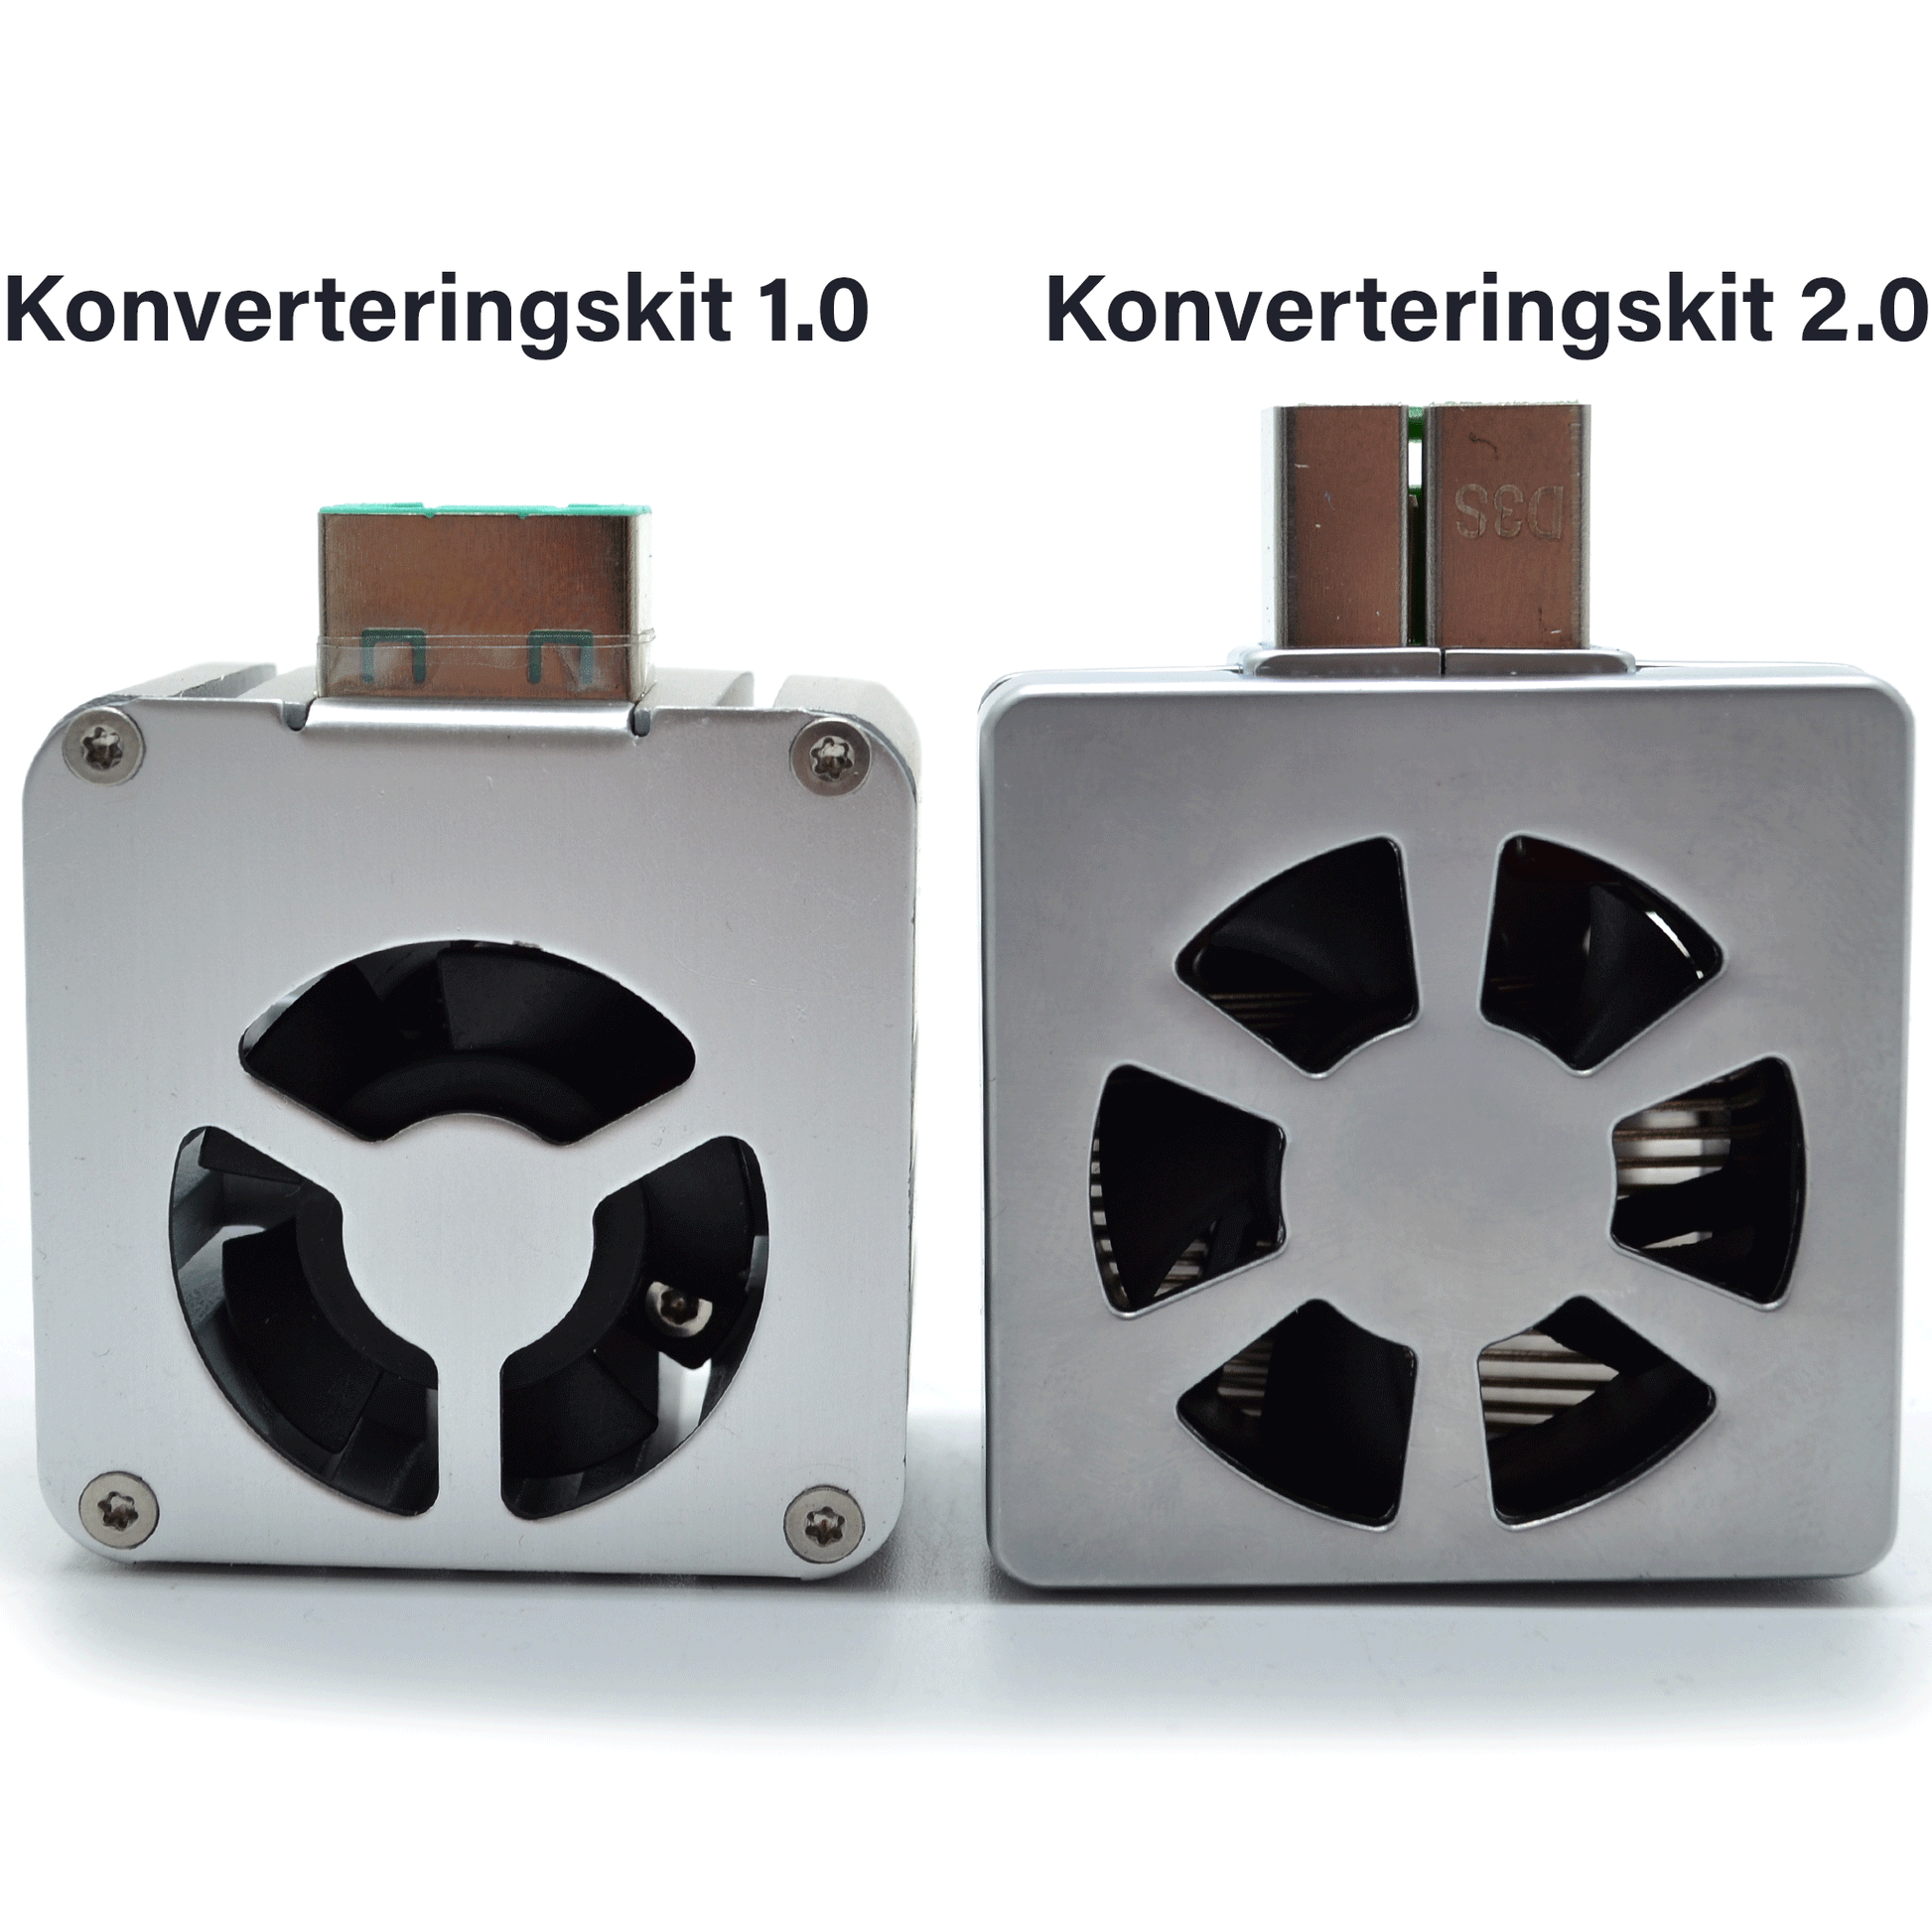 D3s LEDkit 35W / Xenon til LED konverteringskit 2.0 - Lyshelten.no